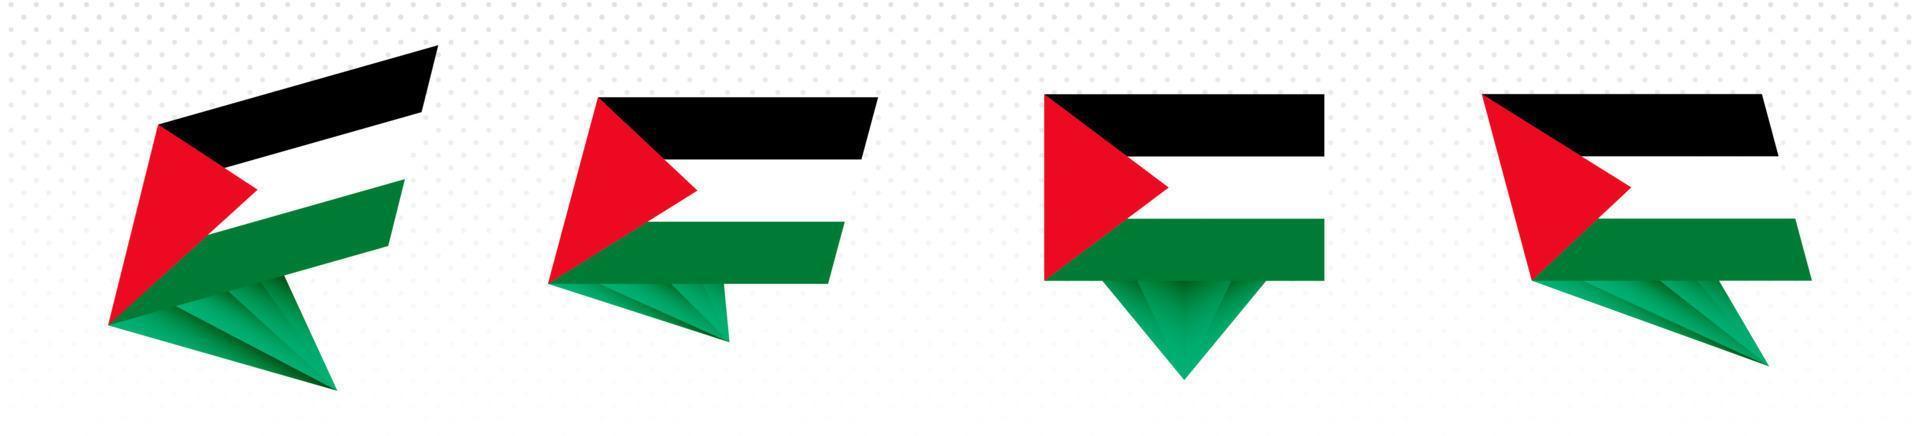 drapeau de la palestine au design abstrait moderne, ensemble de drapeaux. vecteur